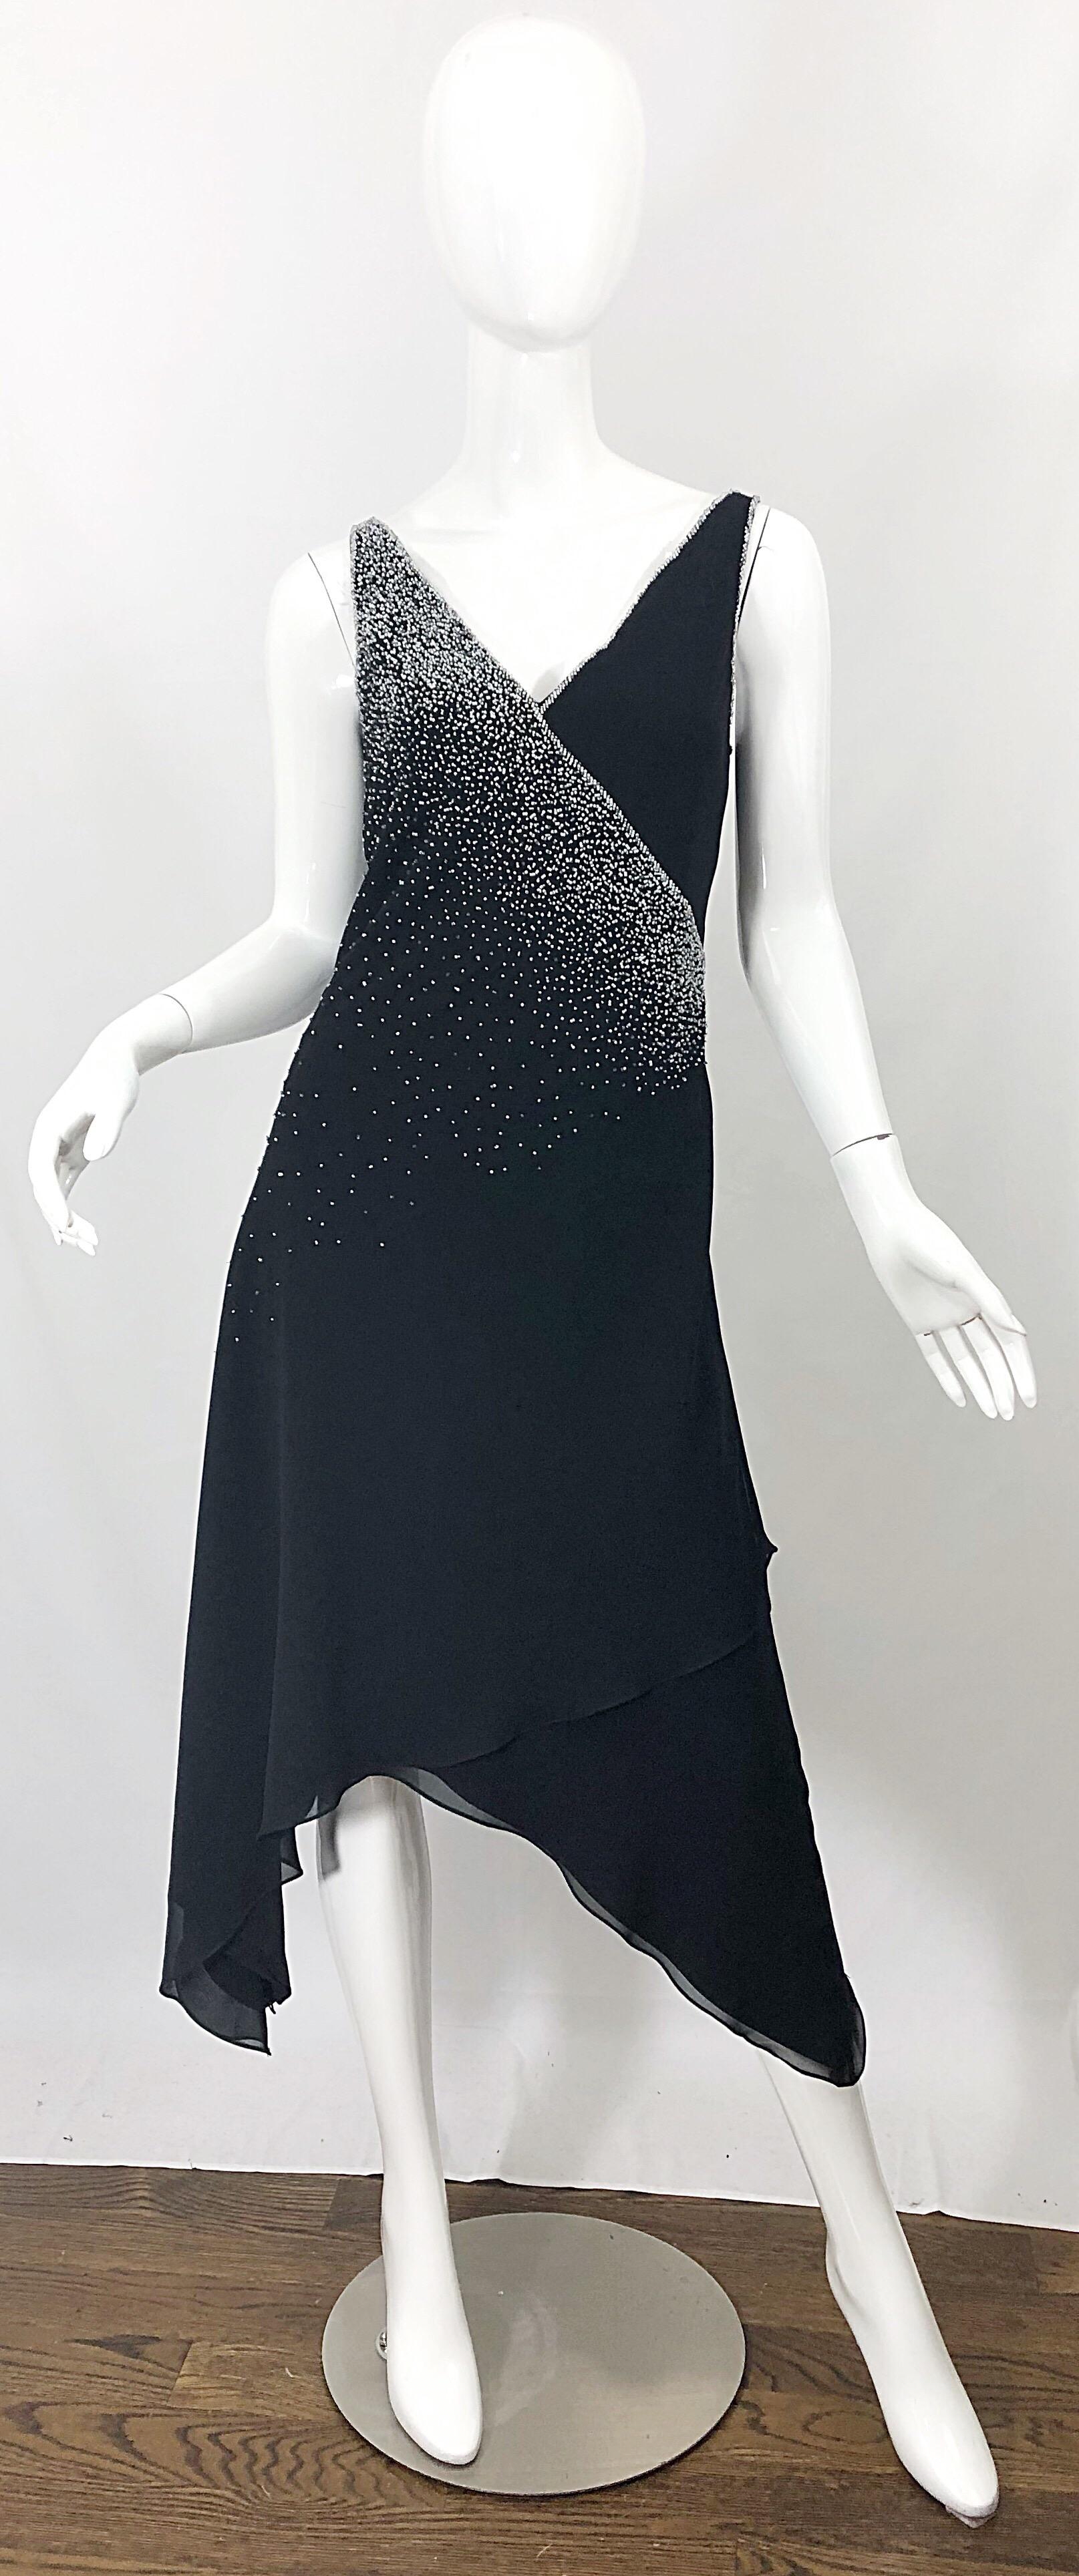 Magnifique robe vintage 90s BOB MACKIE en mousseline de soie noire ! Des centaines de perles d'argent cousues à la main sur toute la surface. Fermeture éclair cachée dans le dos avec fermeture à crochet. La parfaite robe noire intemporelle qui offre